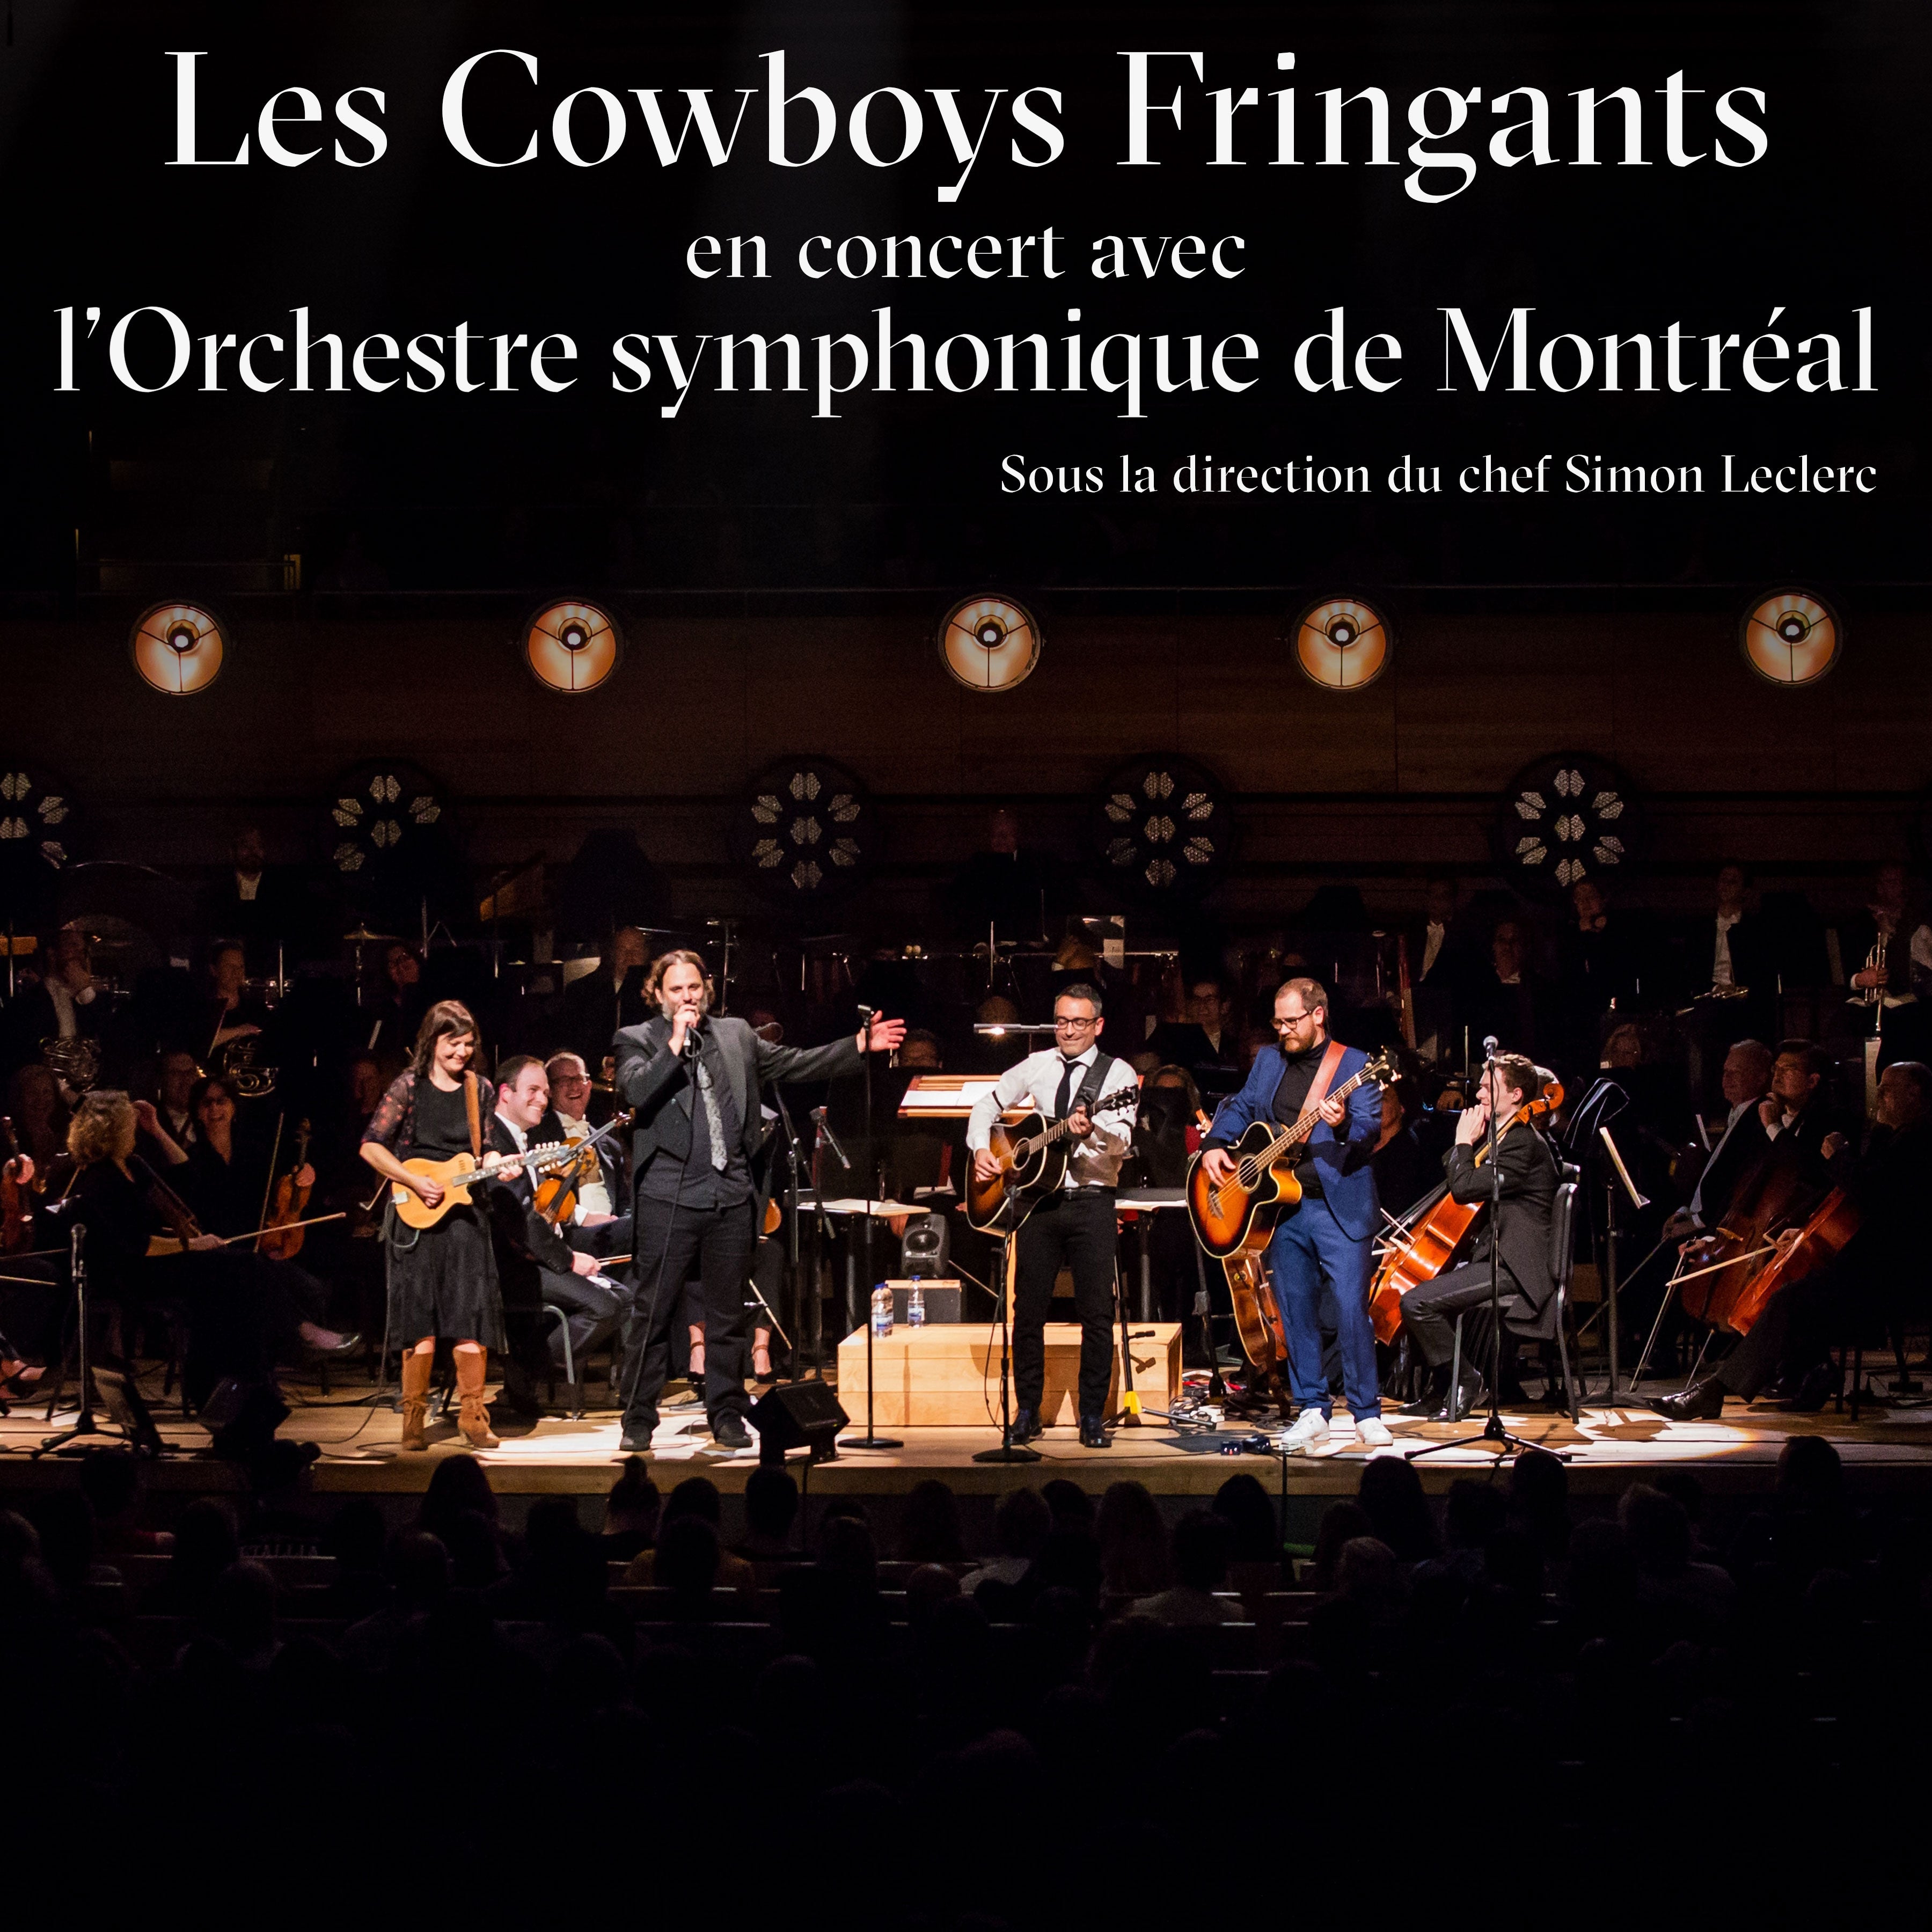 VINYLE - Les Cowboys Fringants - En concert avec l'OSM - TRILP7417